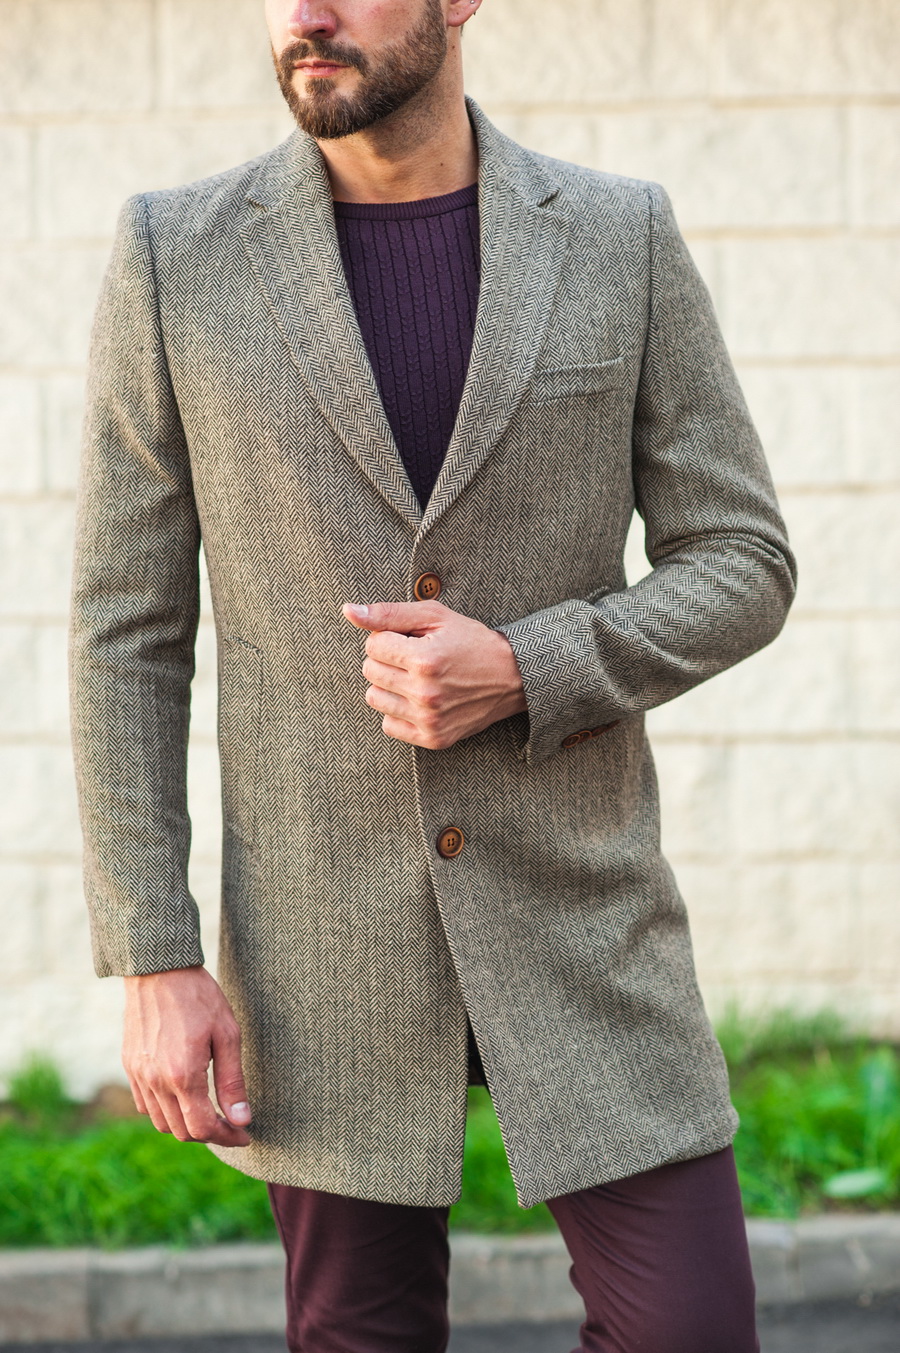 Приталенное мужское пальто серого цвета. Арт.:1-521-2 – купить в магазине мужской одежды Smartcasuals